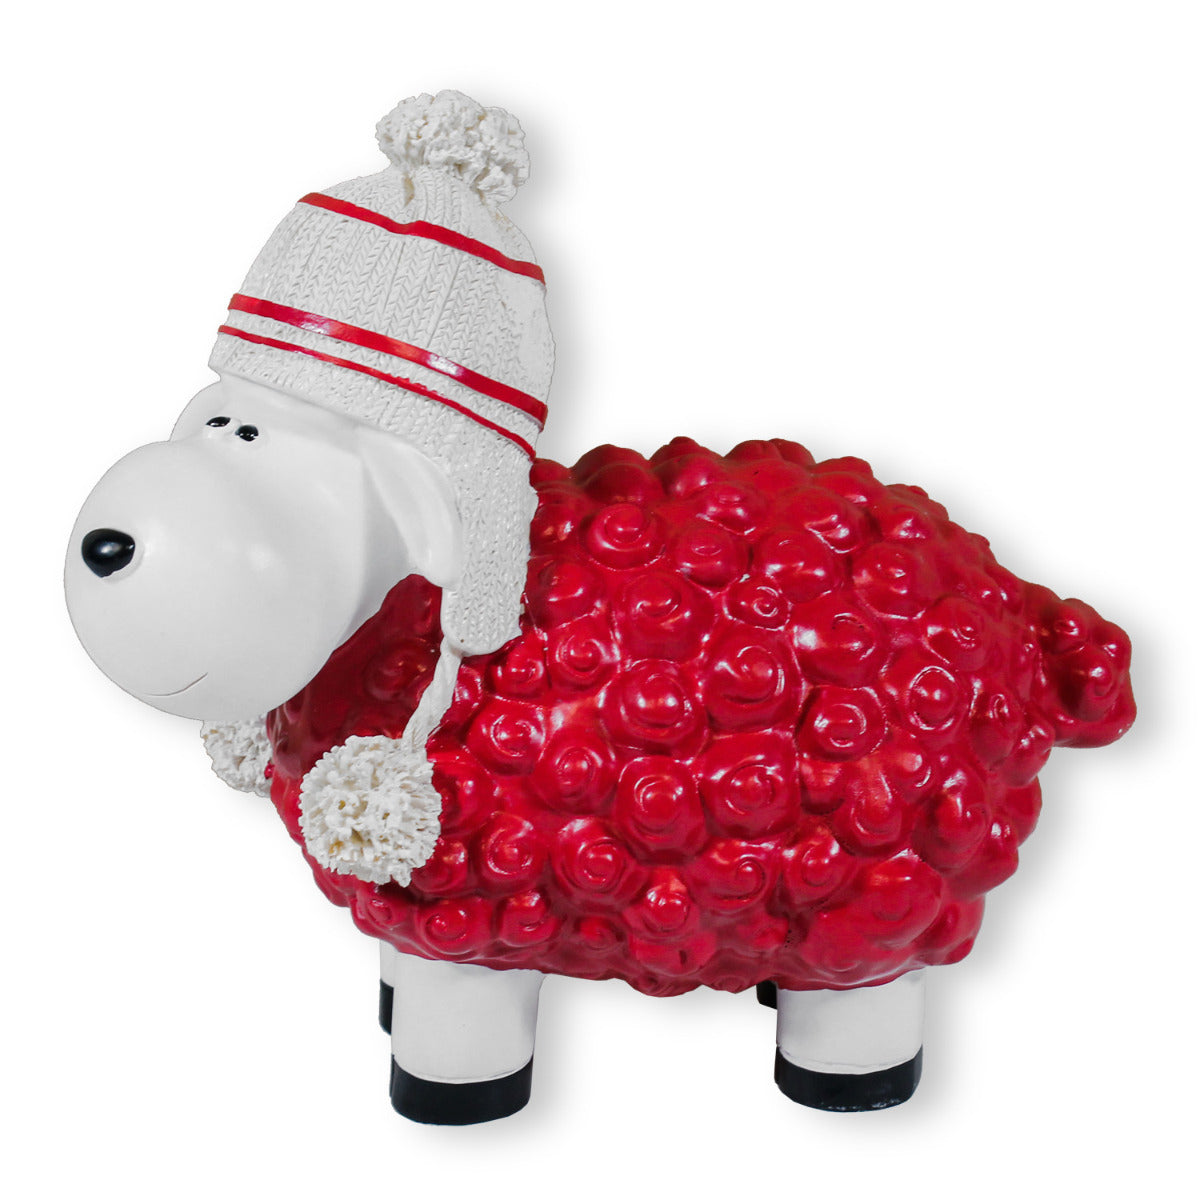 Buntes Deko Schaf rot mit Mütze Gartenfigur Schaf Dekofigur Schaf lustige Schafe